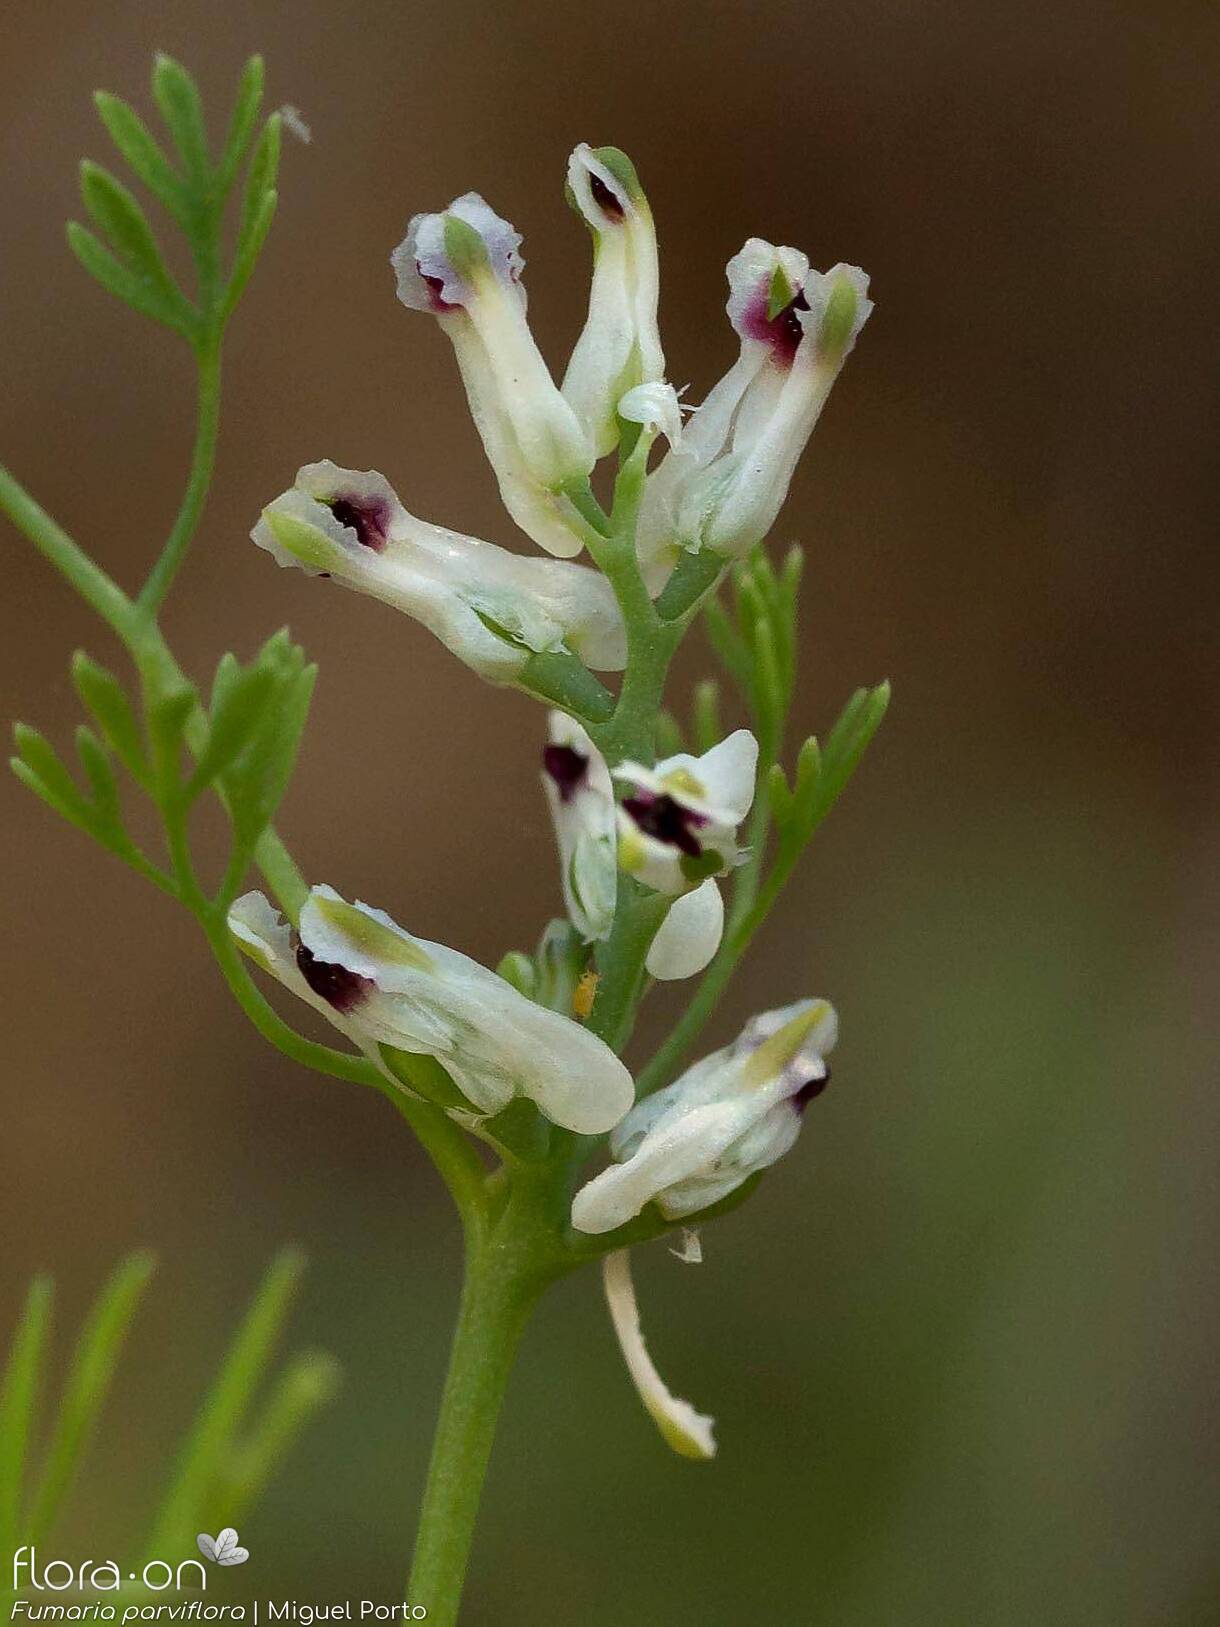 Fumaria parviflora - Flor (geral) | Miguel Porto; CC BY-NC 4.0